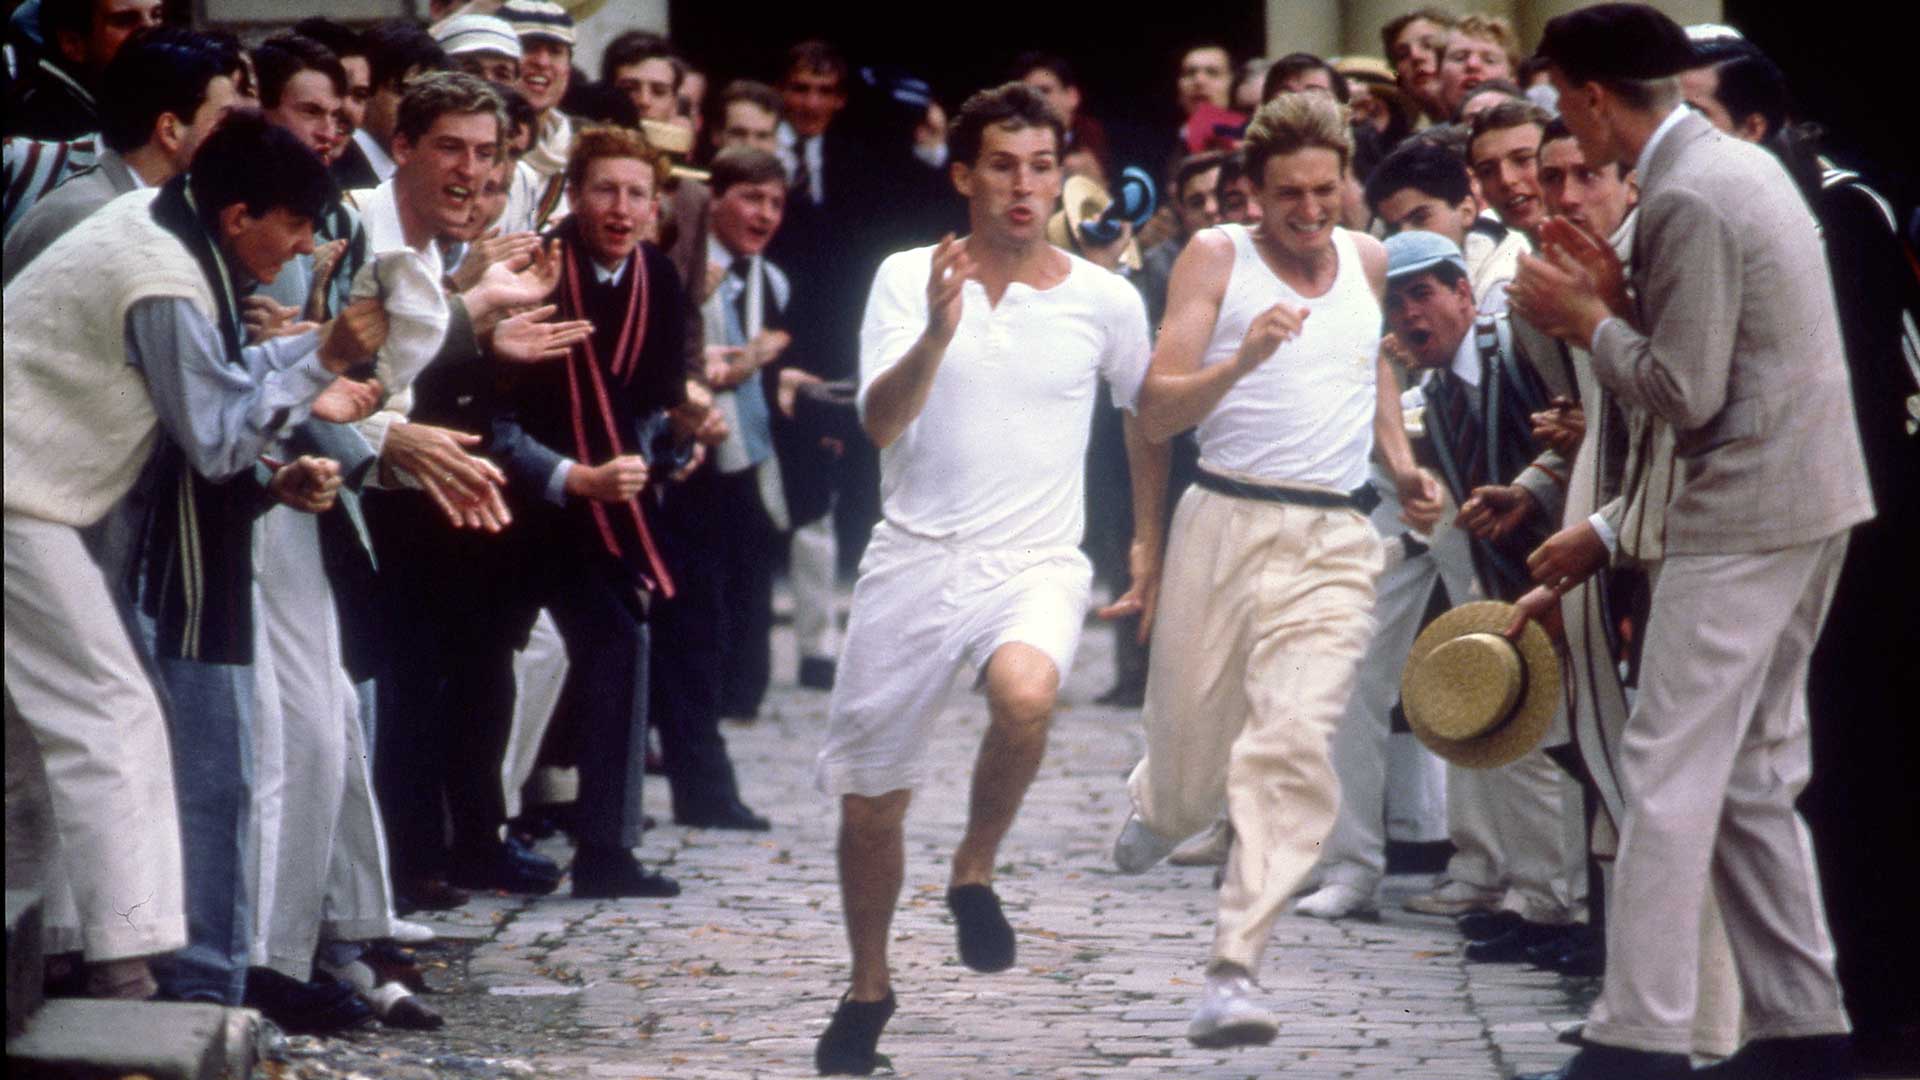 دویدن پسرها با لباس سفید بین مردم در فیلم Chariots of Fire (ارابه های آتش)